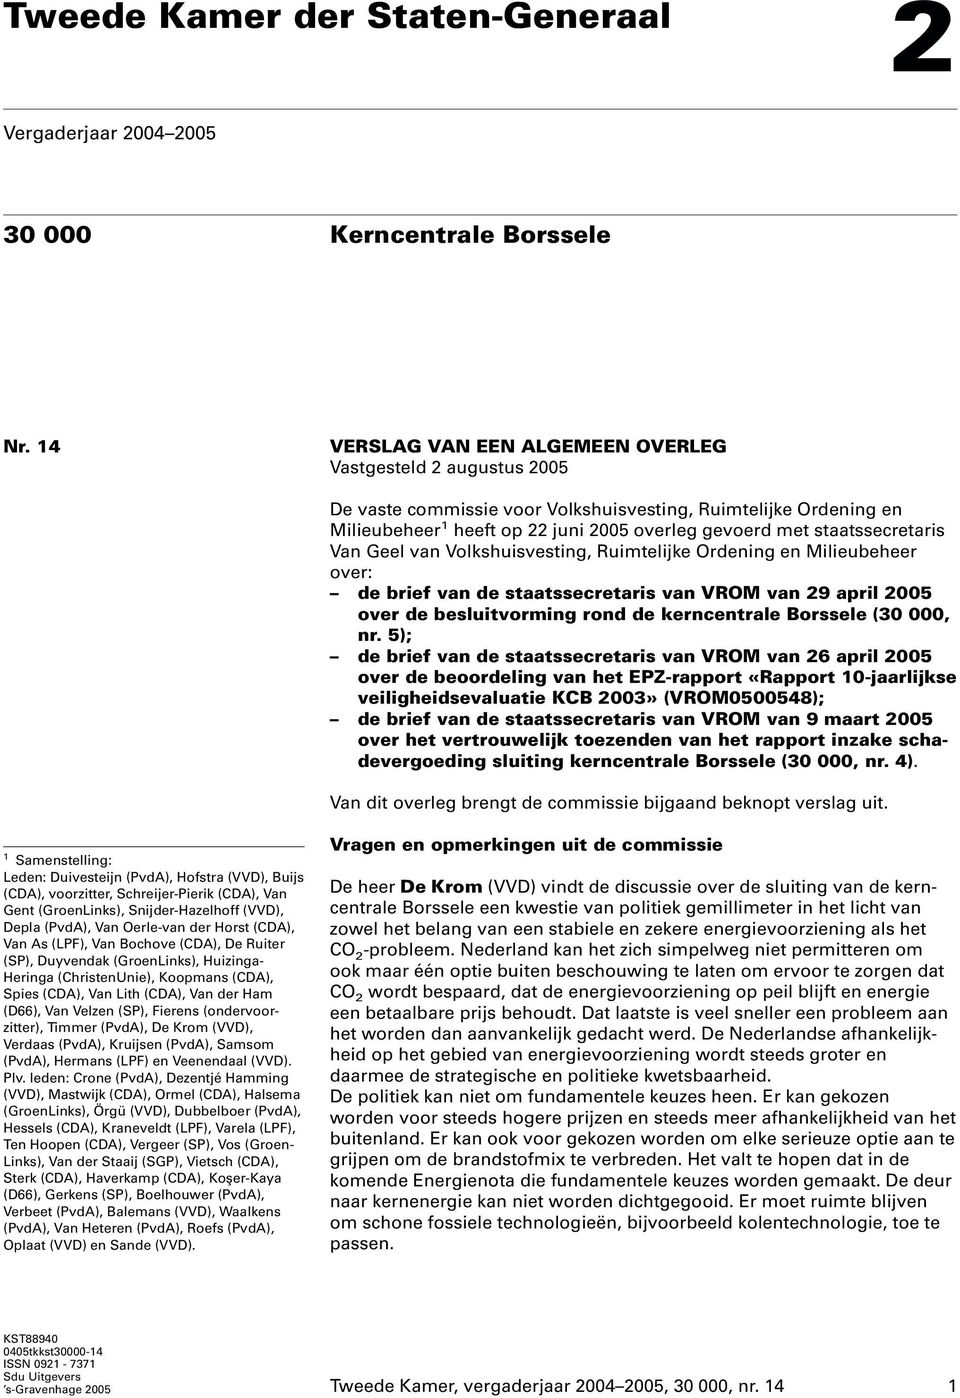 staatssecretaris Van Geel van Volkshuisvesting, Ruimtelijke Ordening en Milieubeheer over: de brief van de staatssecretaris van VROM van 29 april 2005 over de besluitvorming rond de kerncentrale